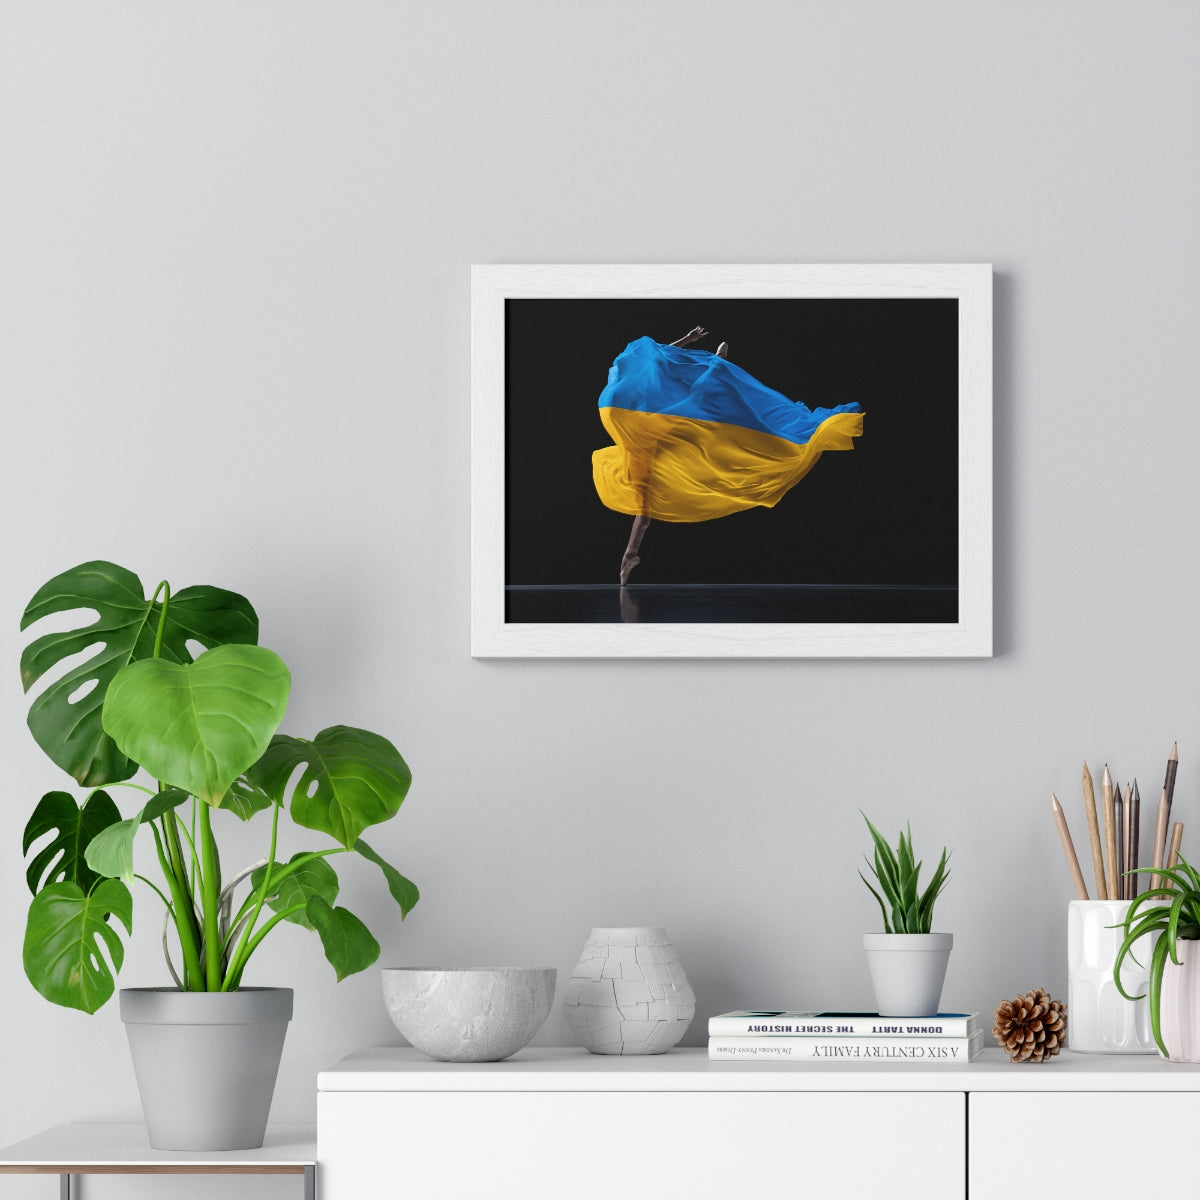 Bailarina bailando con bandera de Ucrania - Lámina enmarcada 